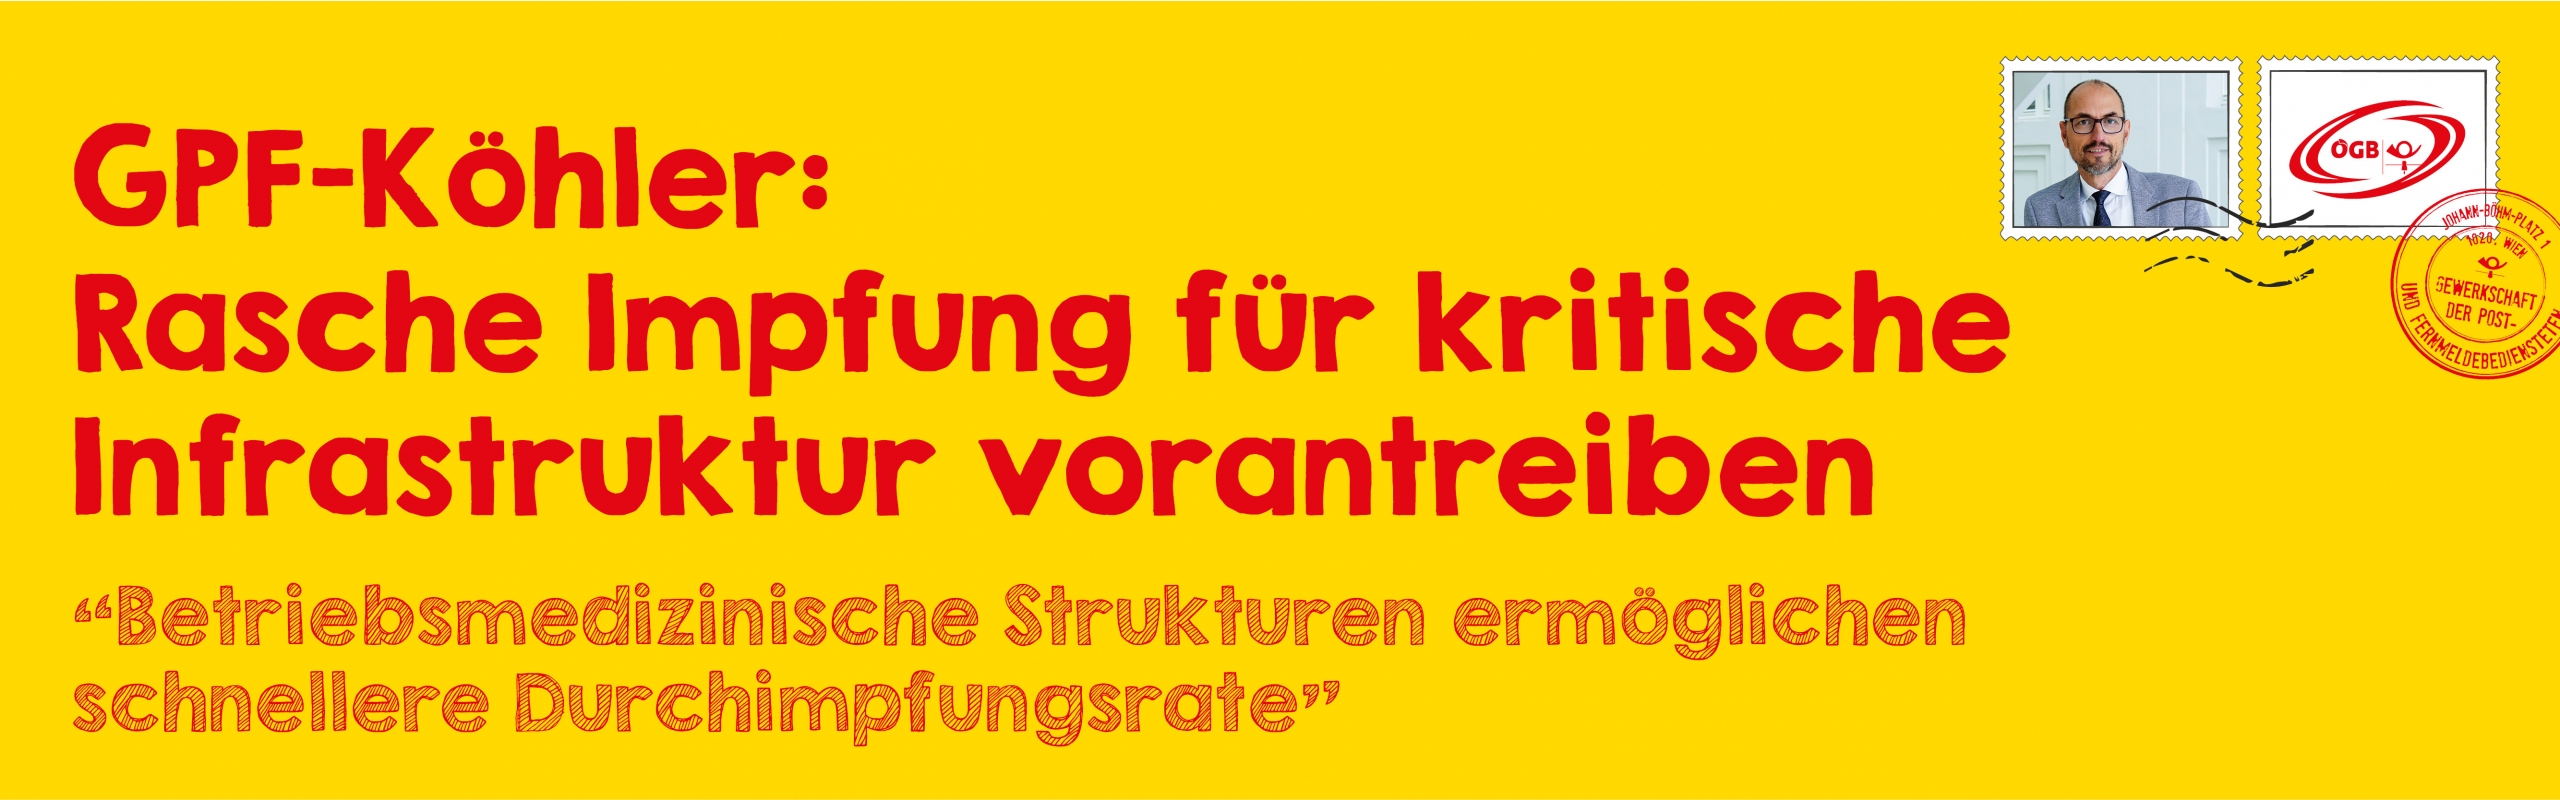 OTS Köhler_Rasche Impfung für kritische Infrastruktur_Banner